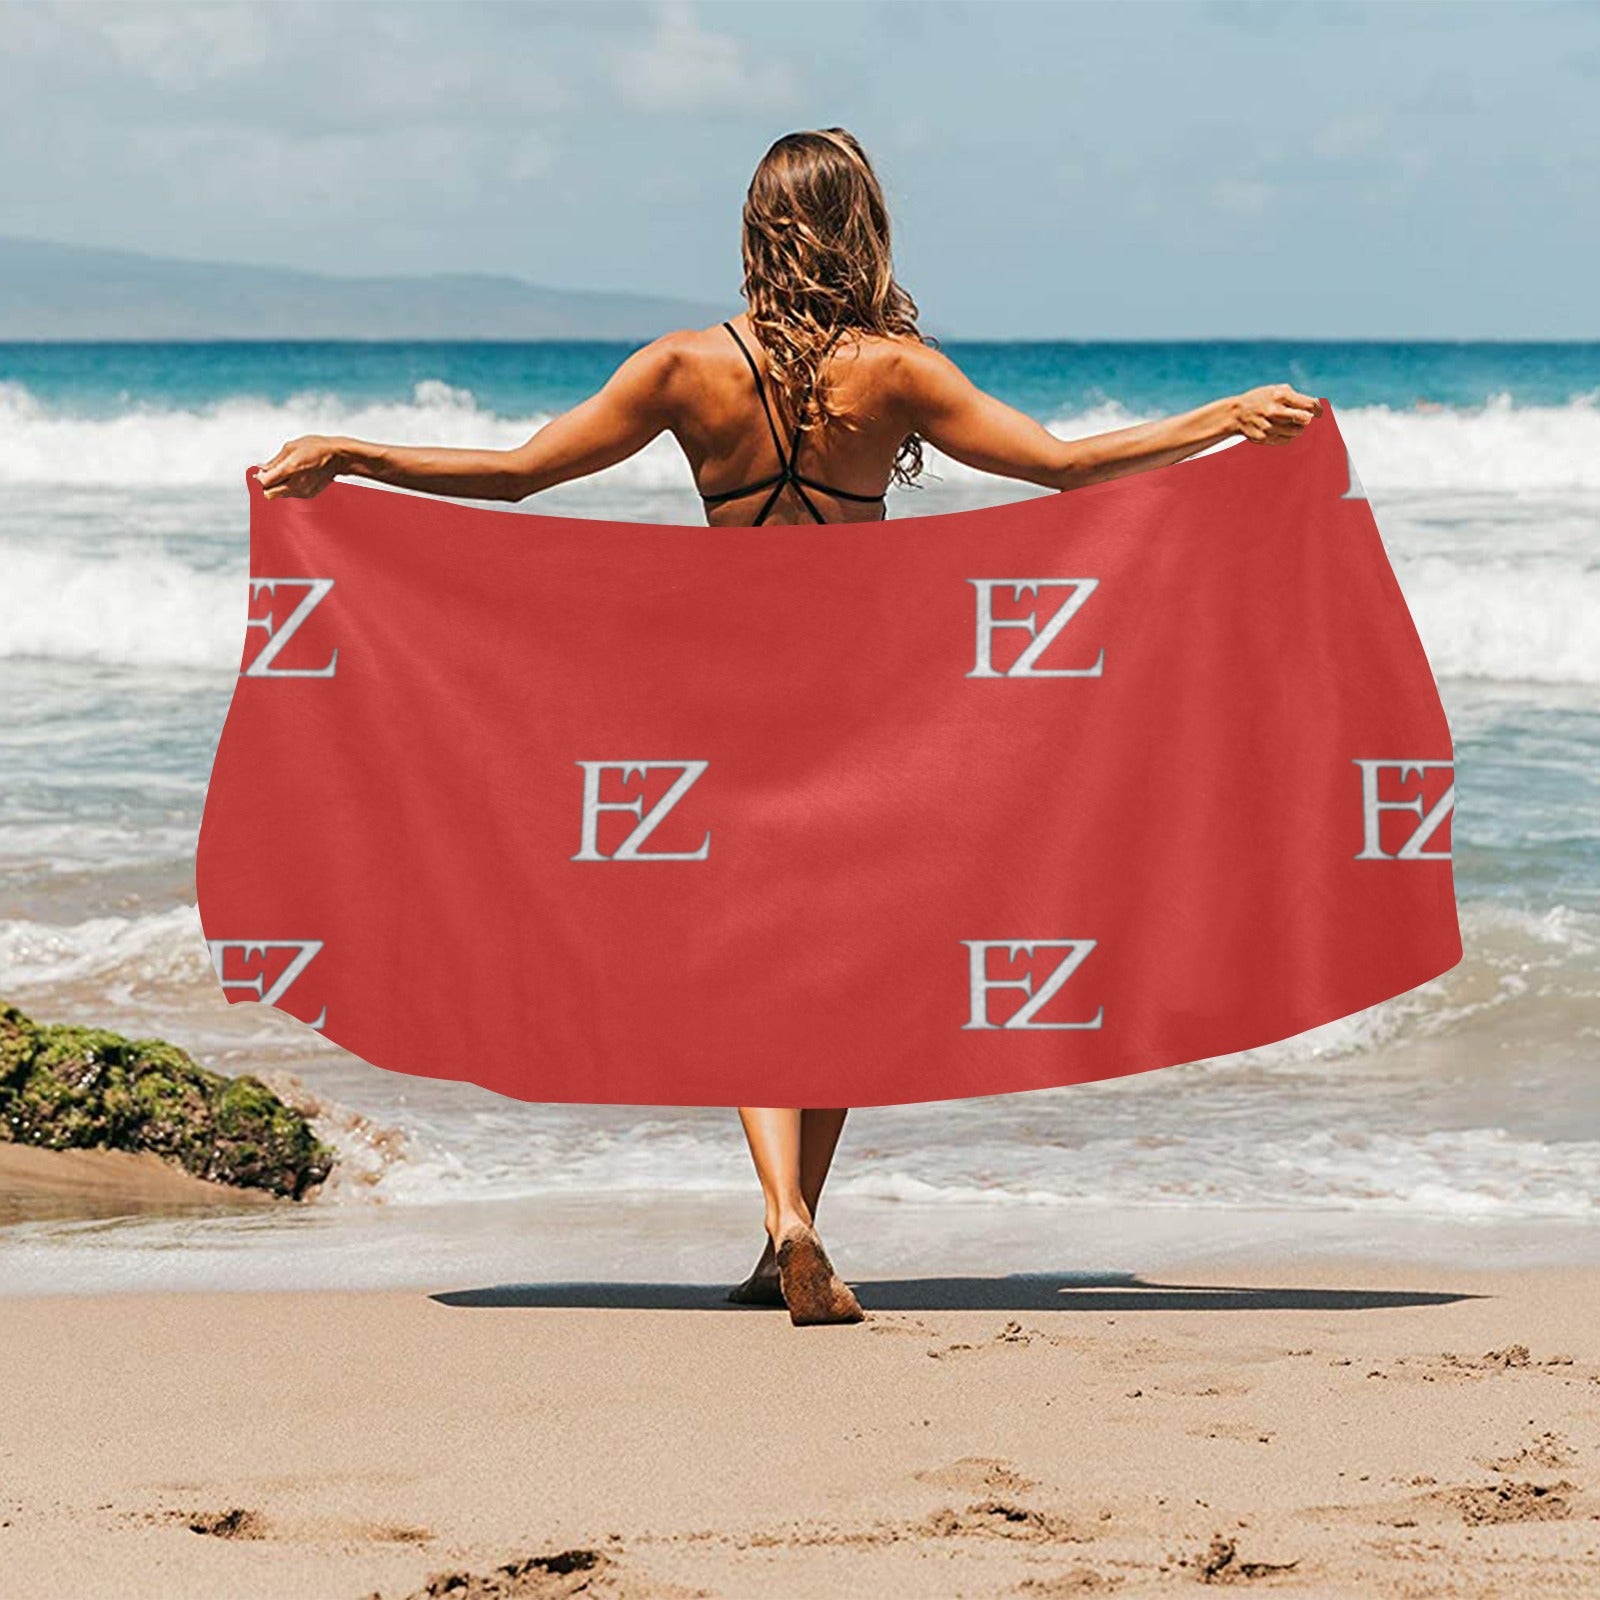 fz beach towel - red beach towel 32"x 71"(made in queen)